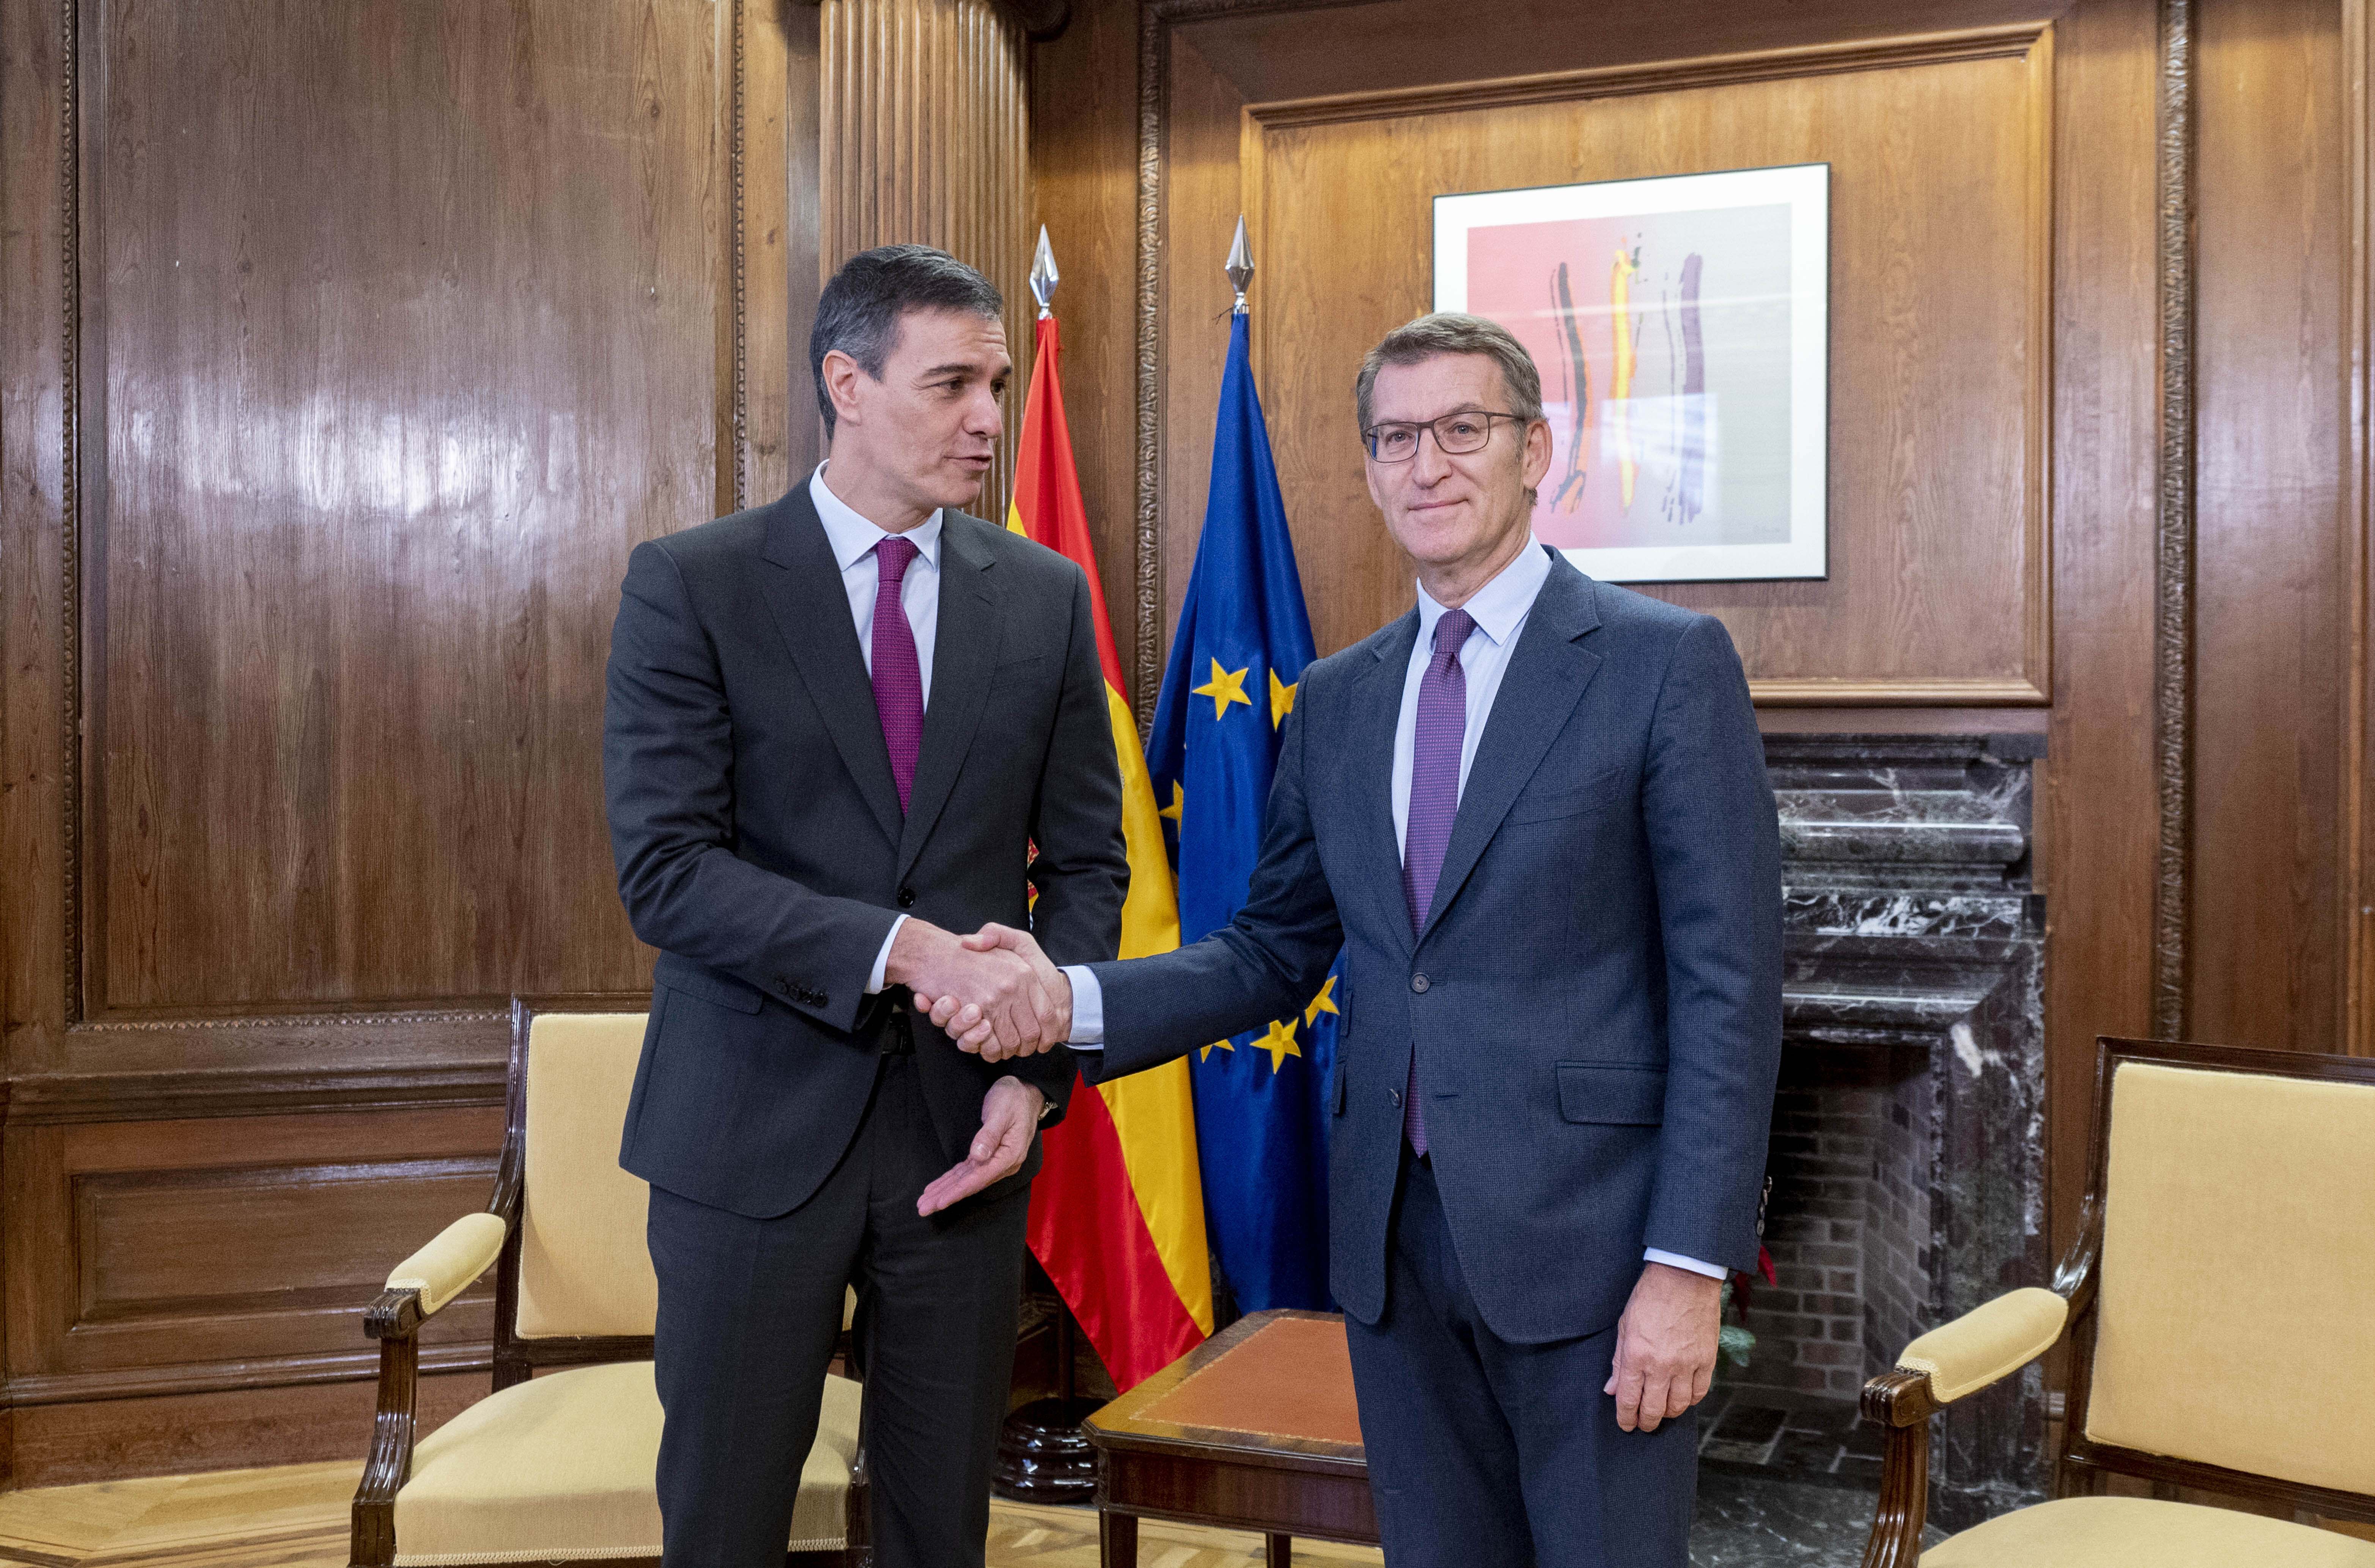 Sánchez concedeix a Feijóo que la Comissió Europea "mediï i verifiqui" la renovació del CGPJ